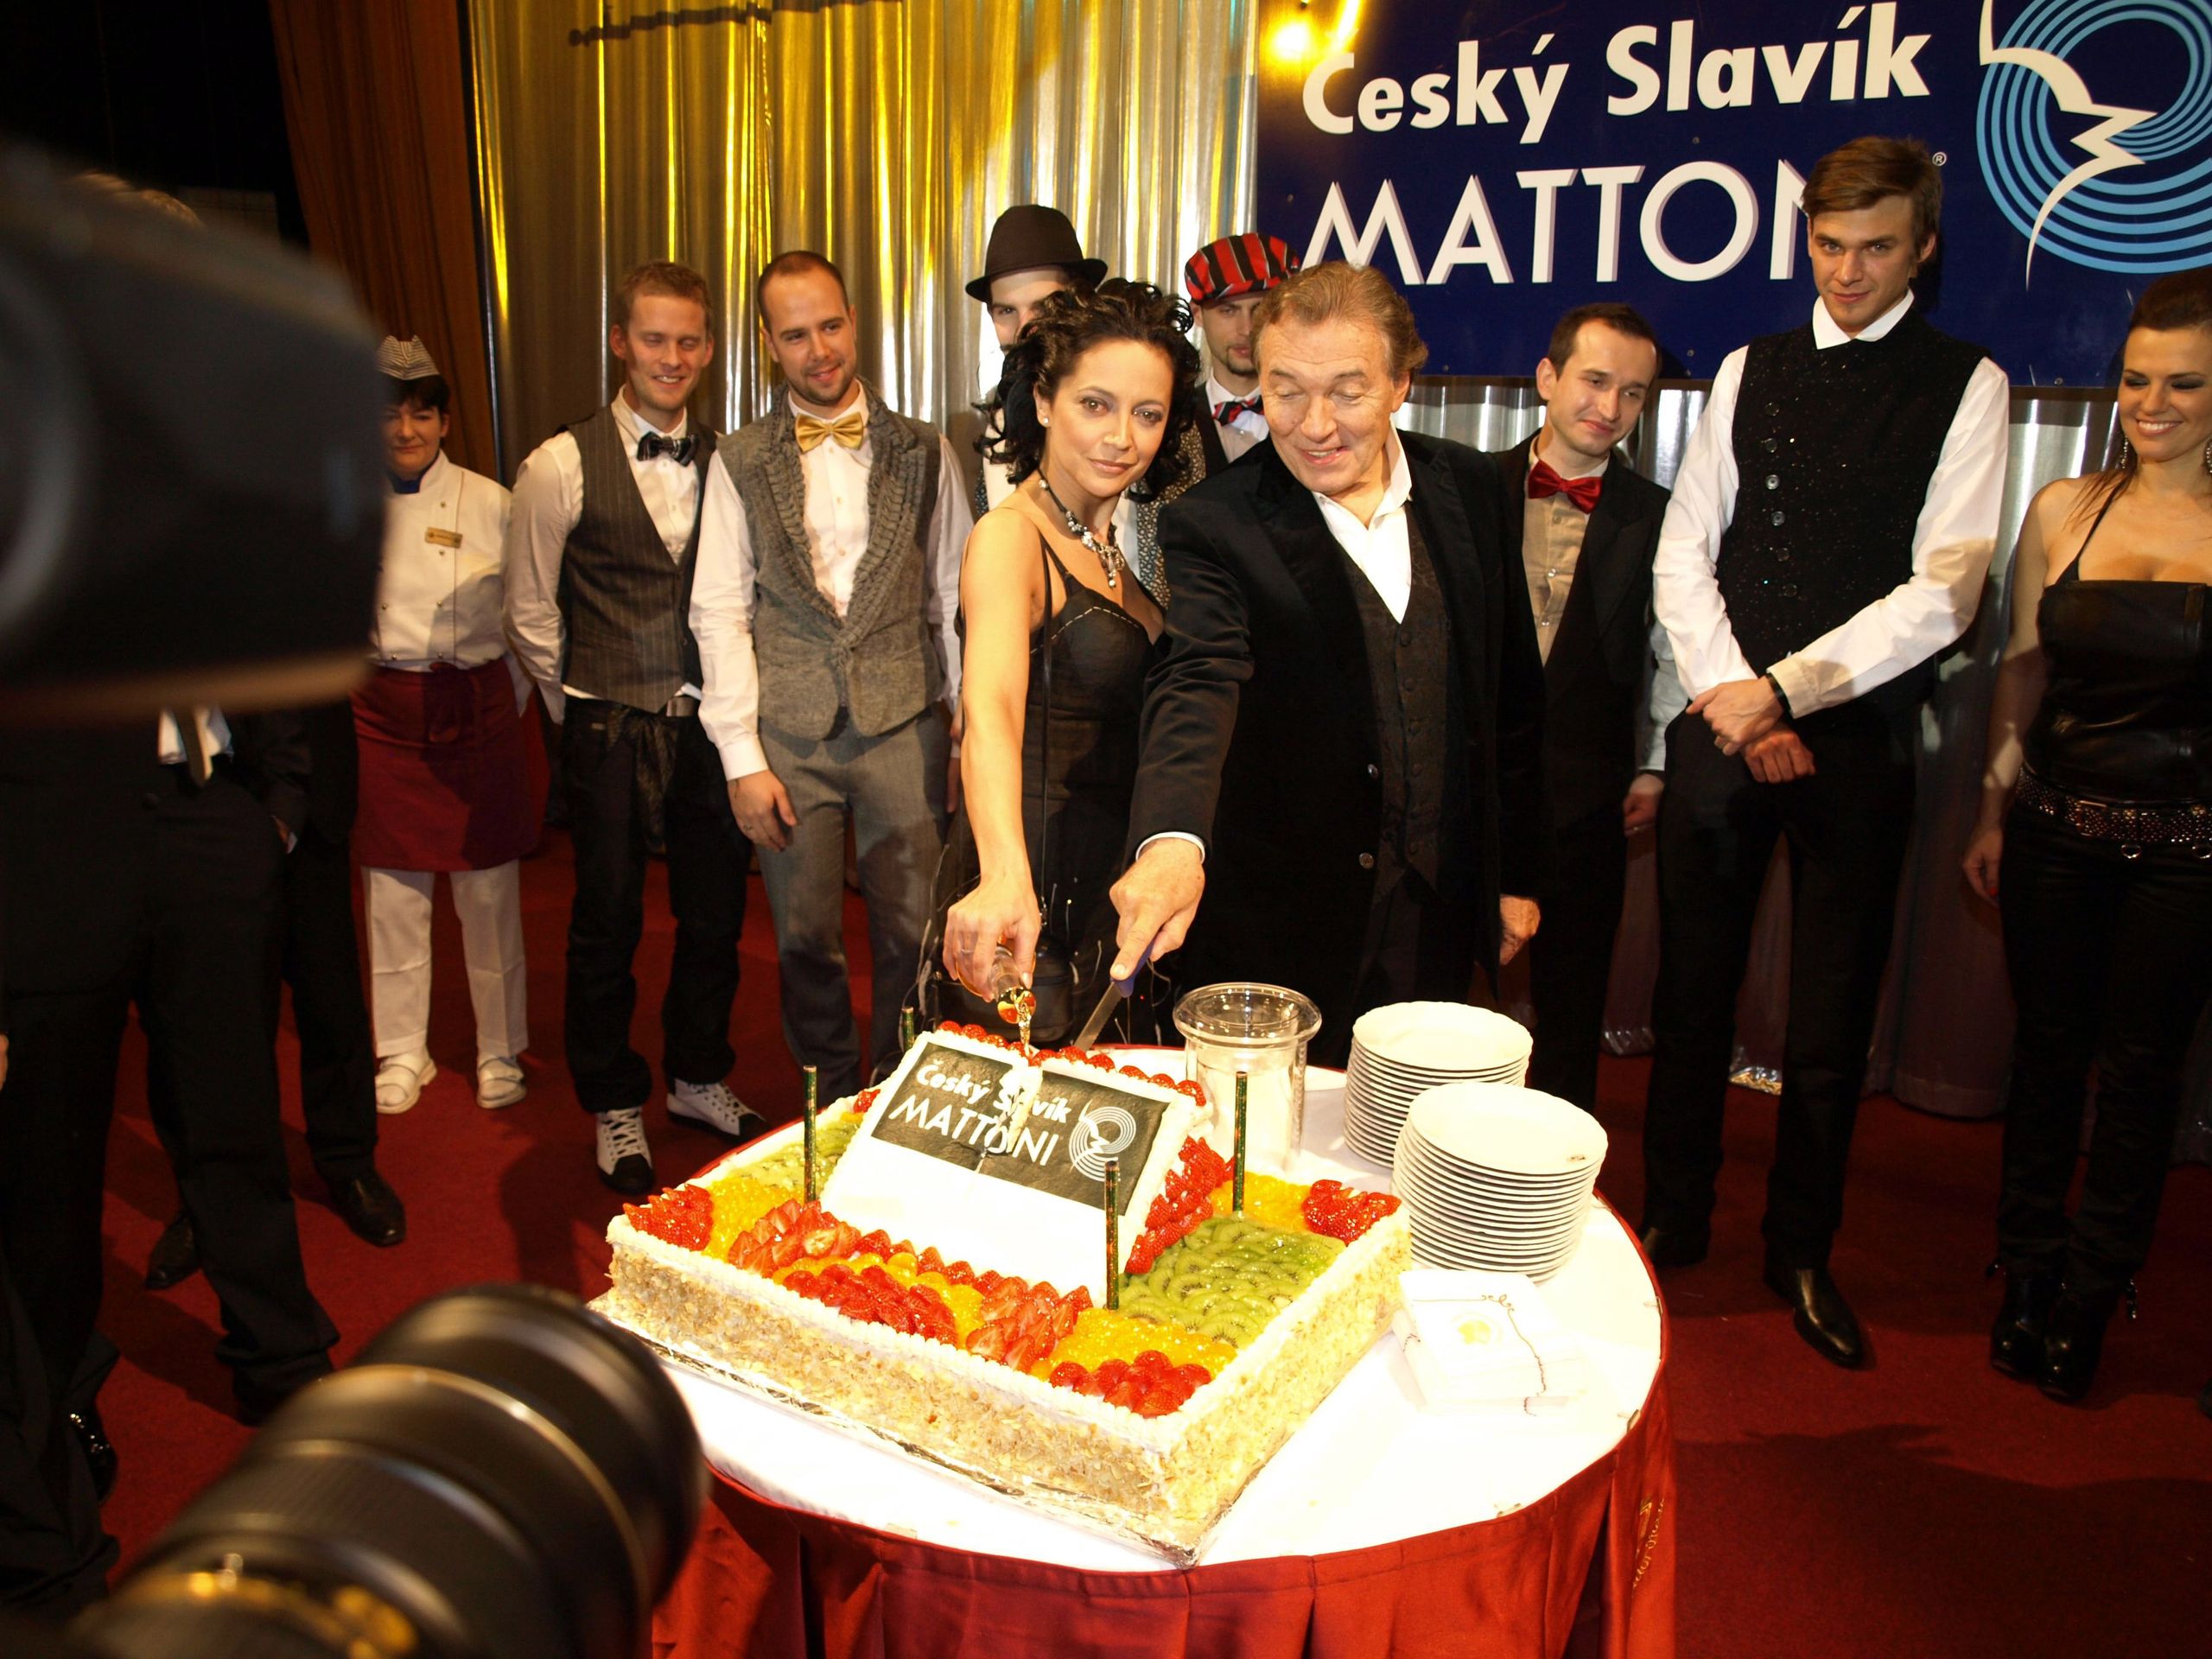 Bílá a Gott krájejí dort - GALERIE: Český slavík Mattoni 2009 (10/10)